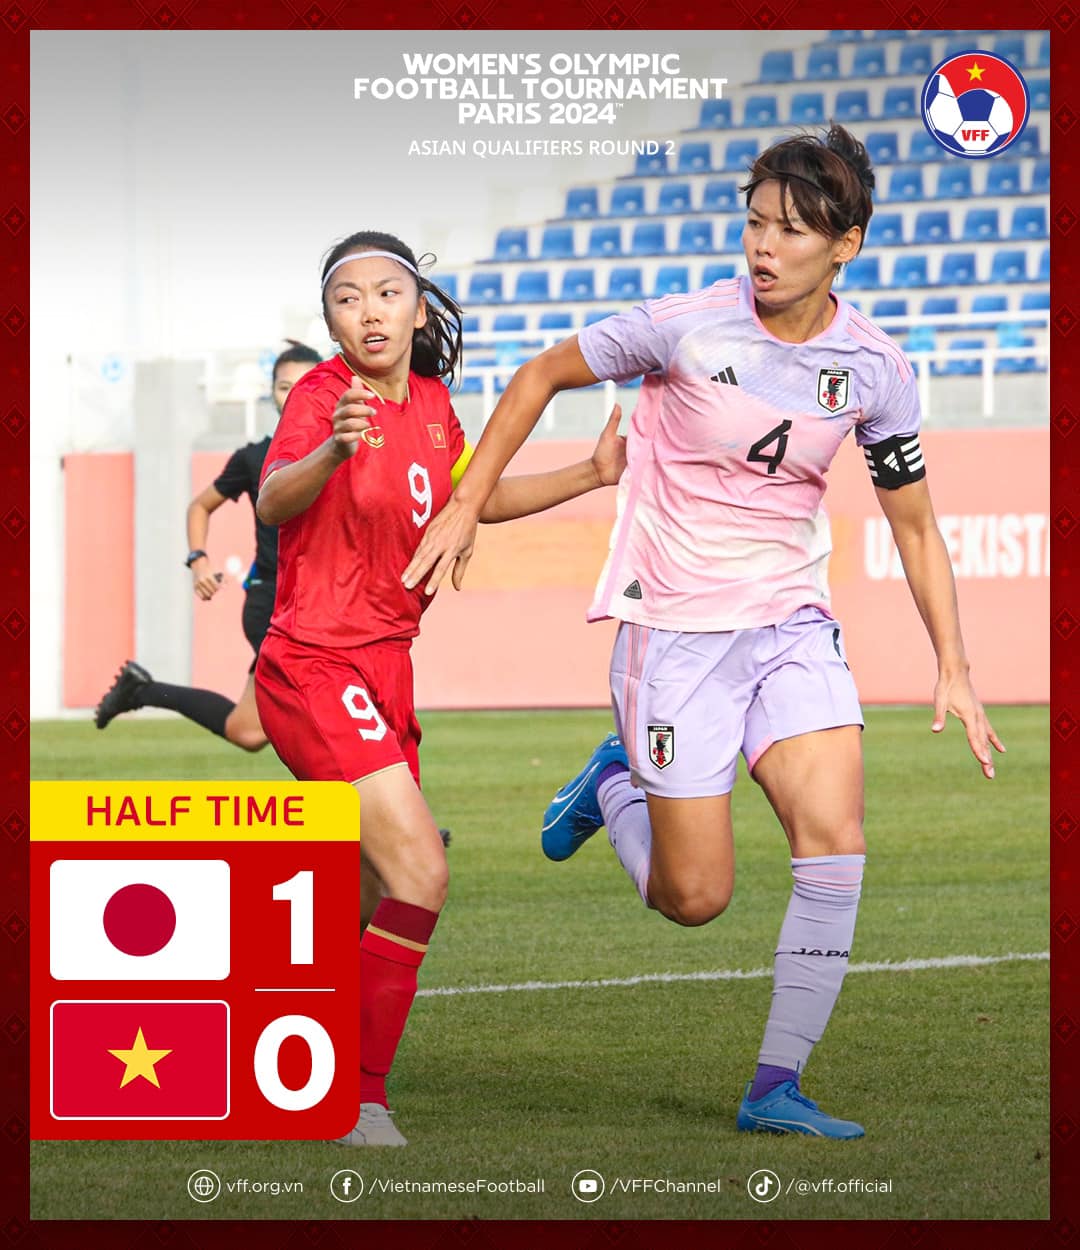 Tuyển nữ Nhật Bàn dẫn tuyển nữ 1-0 sau hiệp 1. Ảnh: VFF